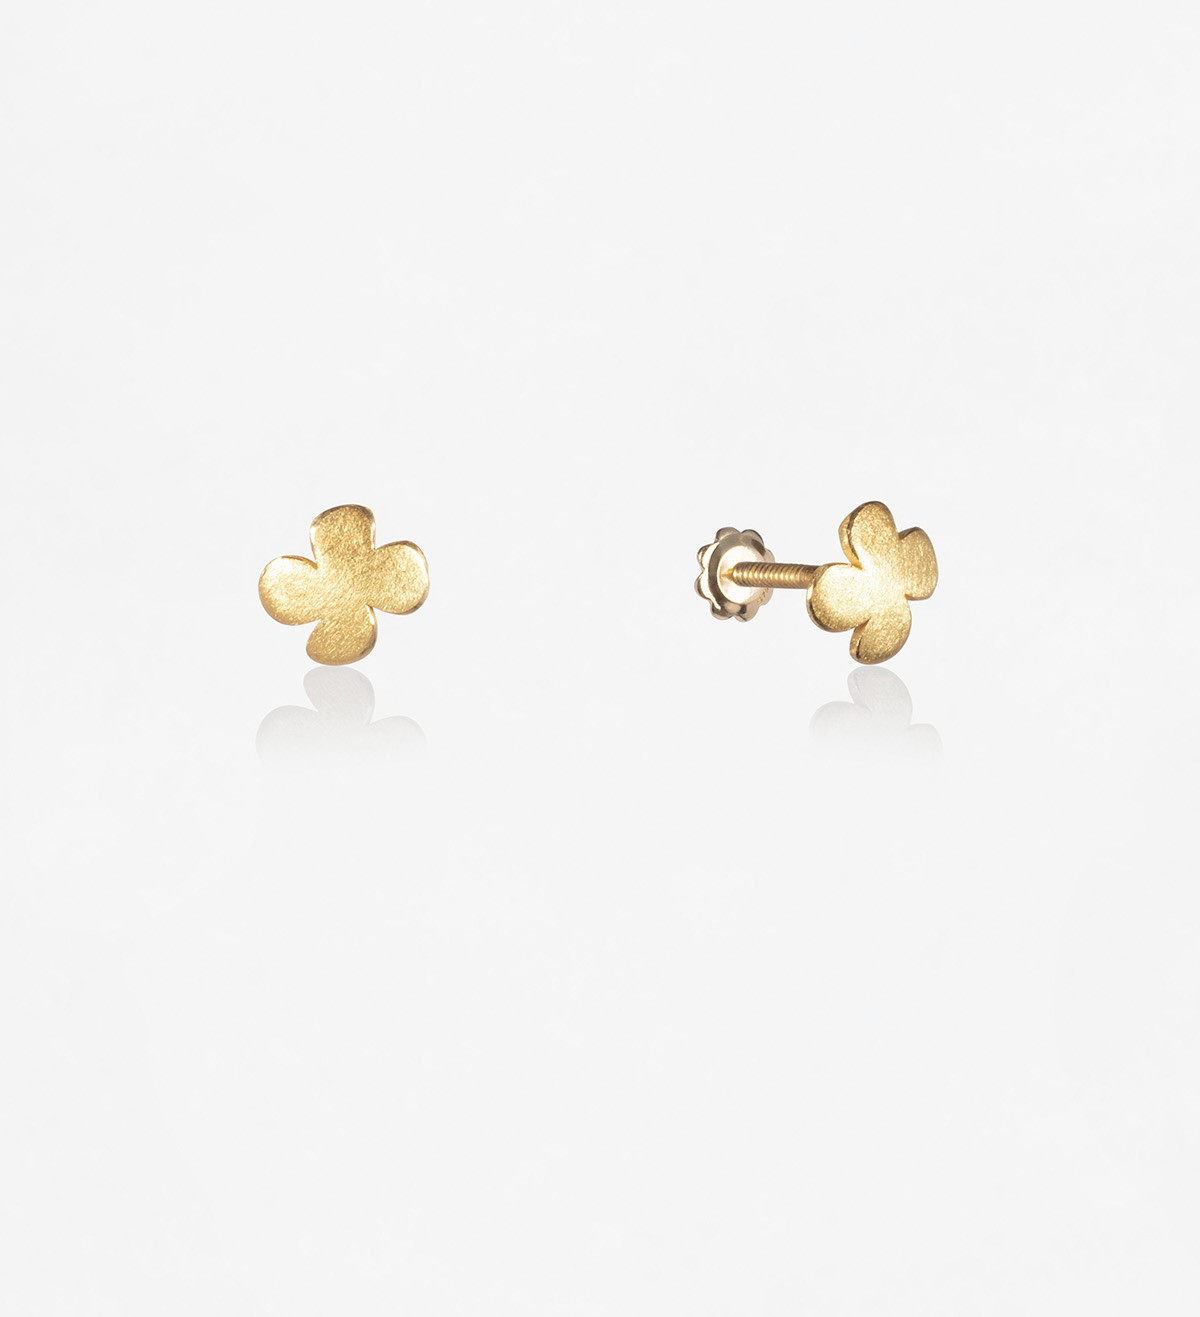 18k gold earrings Símbol clover 5mm